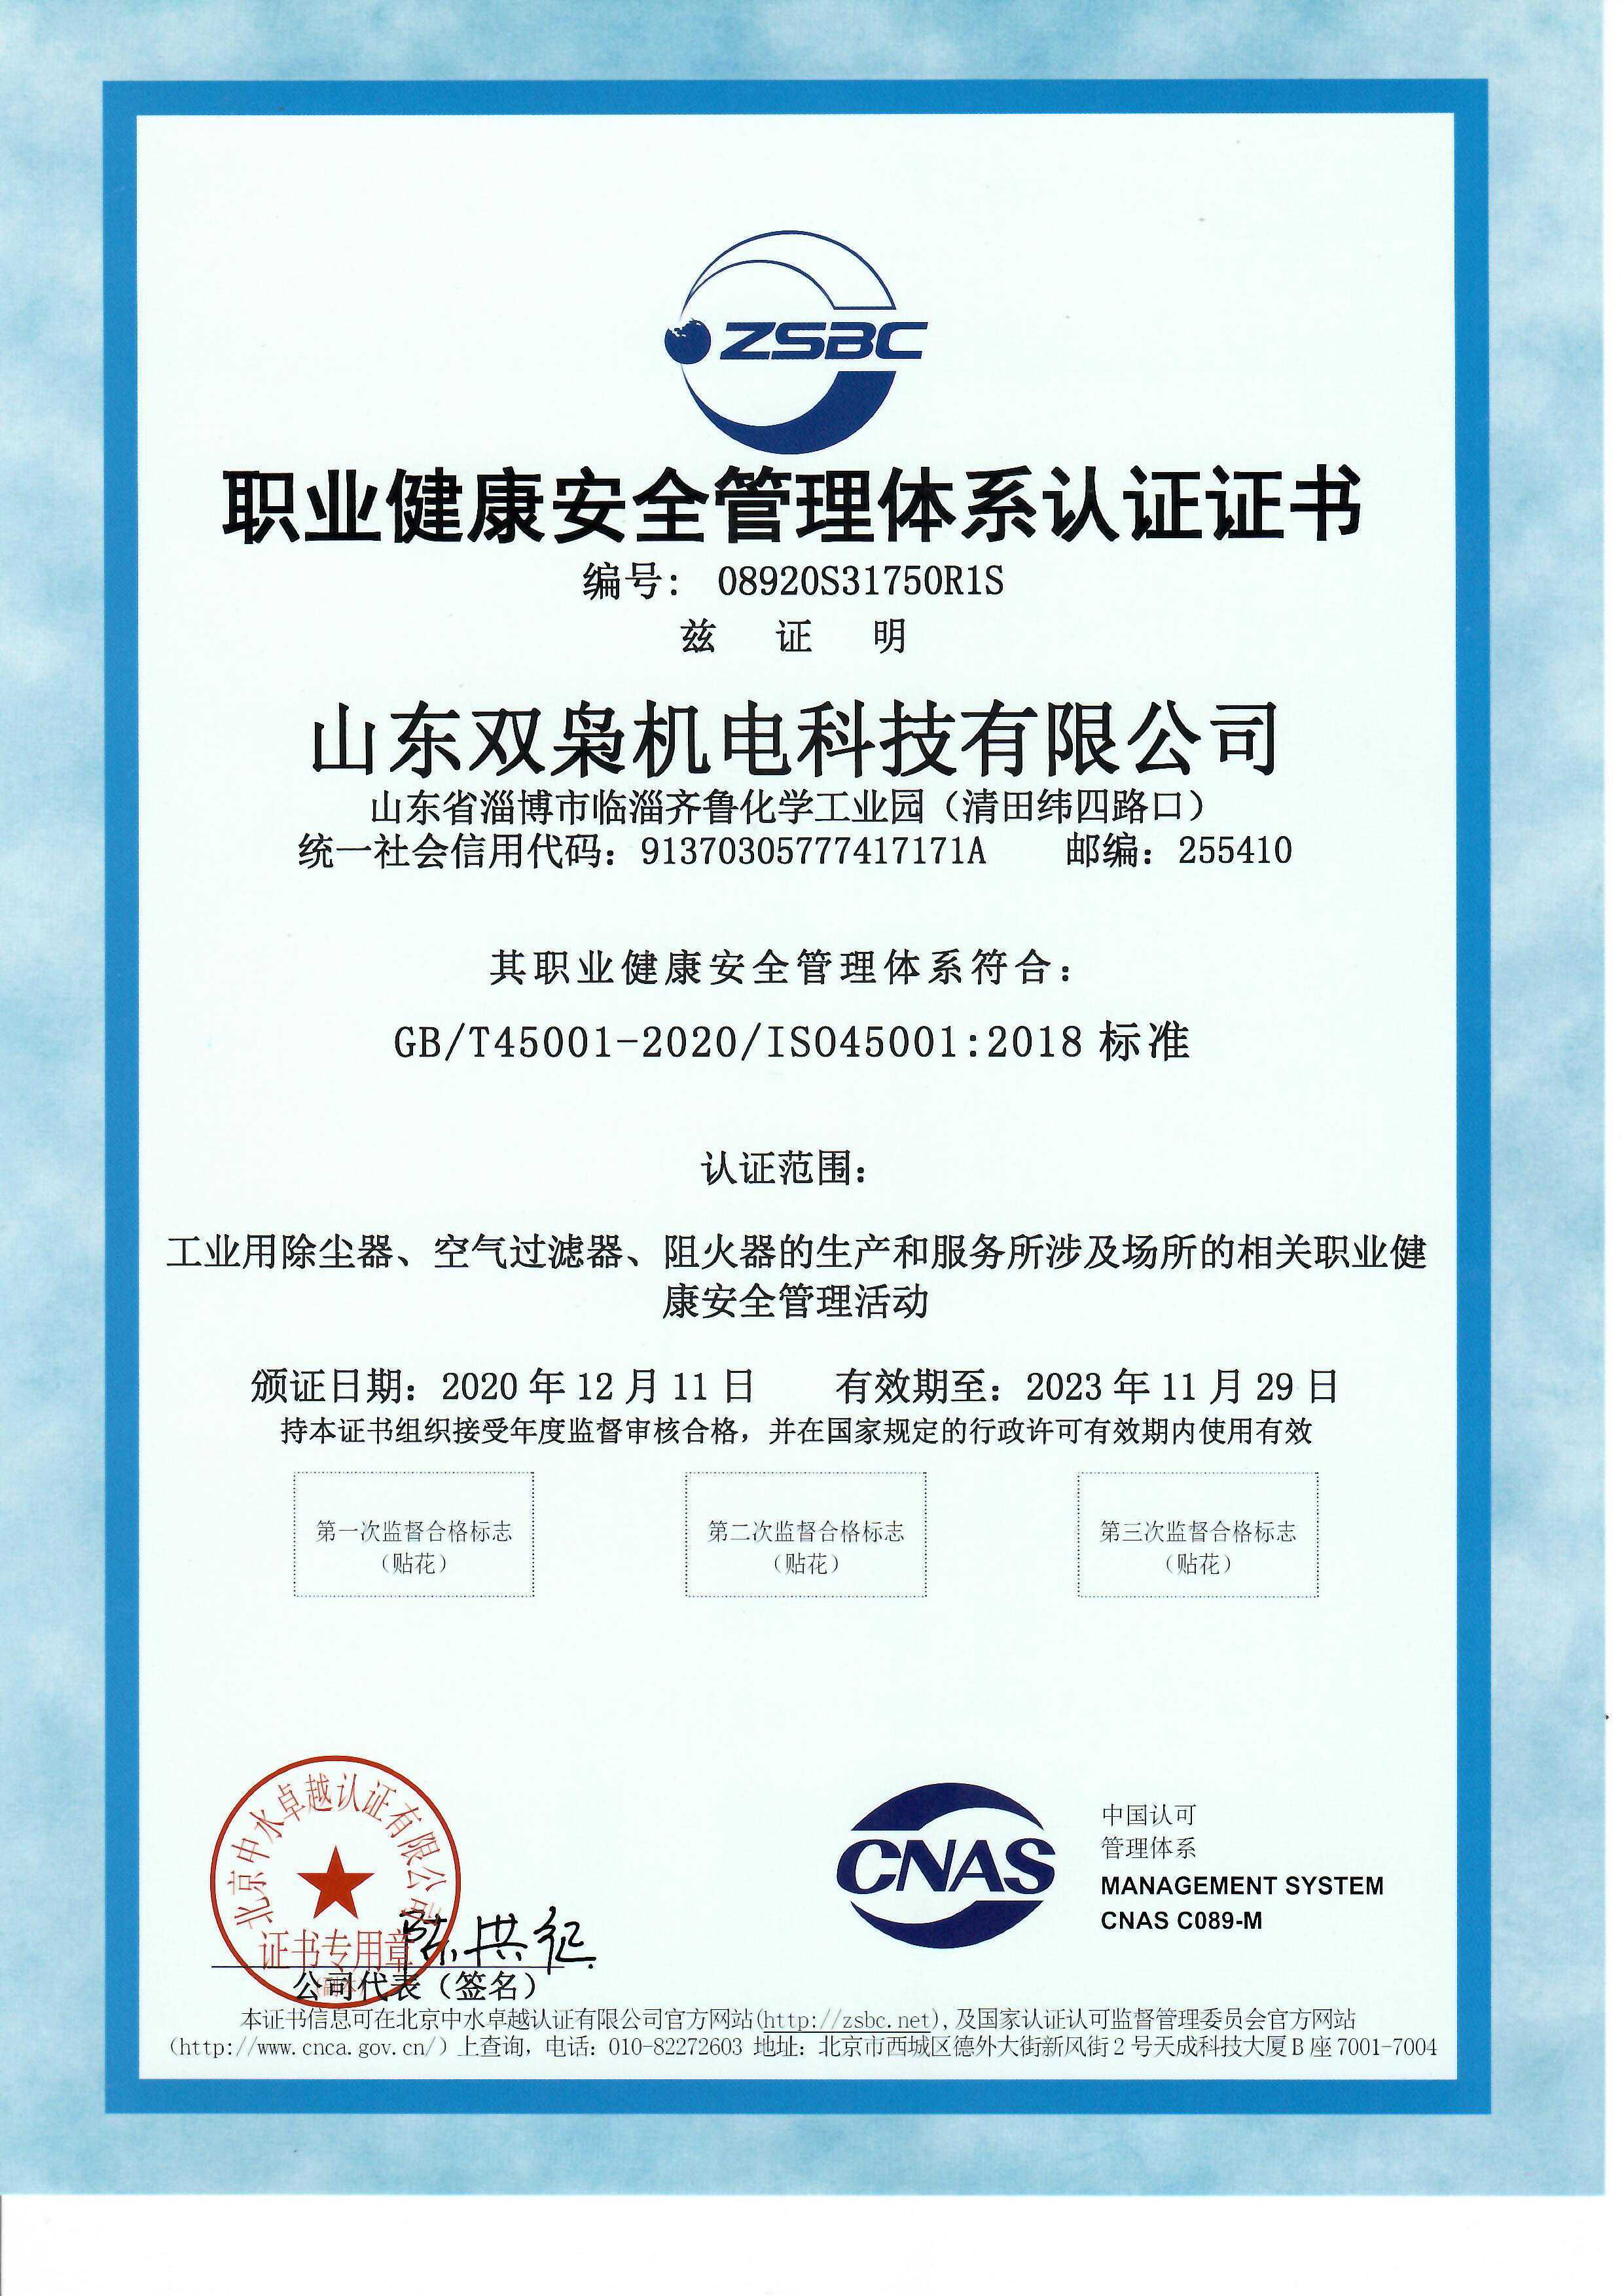 阻火器厂家 职业健康安全管理体系认证证书